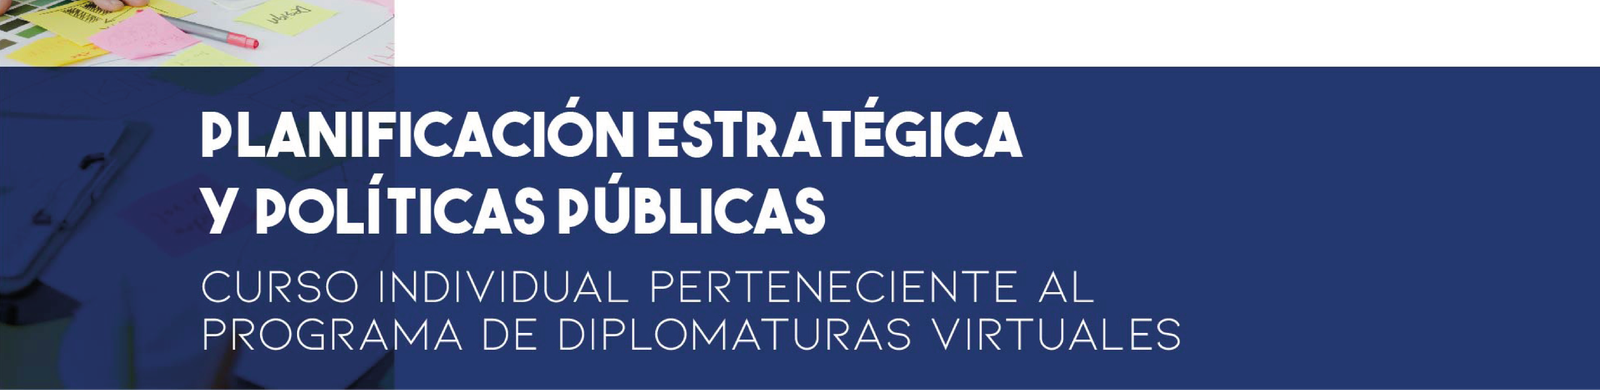 iispi - PLANIFICACIÓN ESTRATÉGICA Y POLÍTICAS PÚBLICAS_Mesa de trabajo 1.png